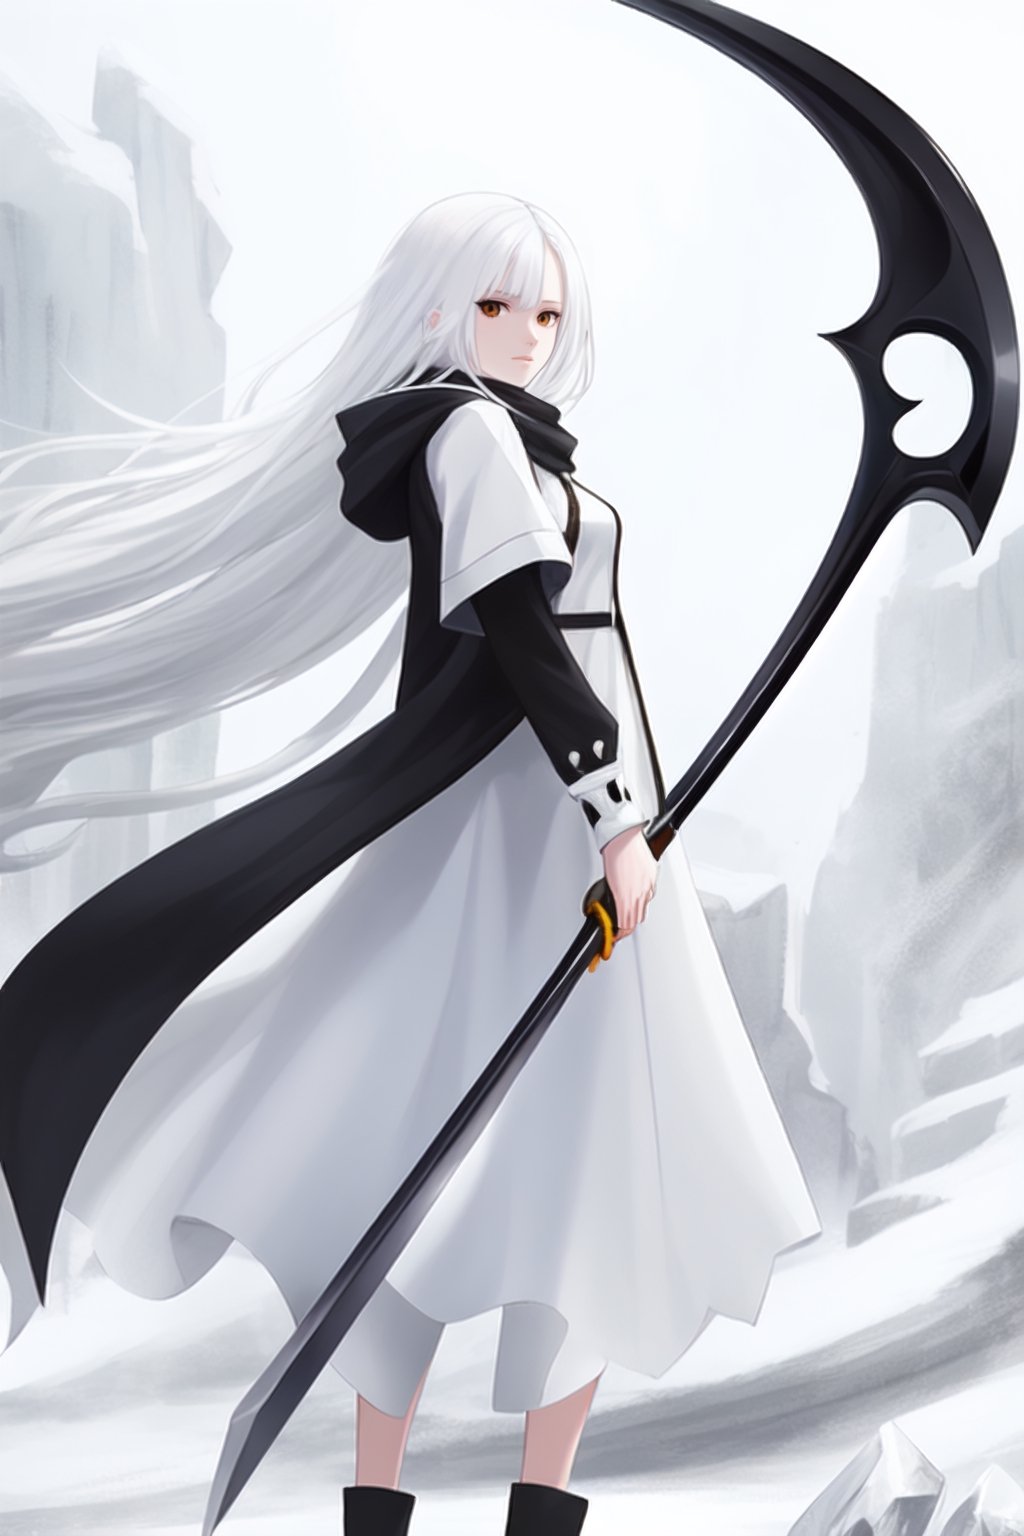 white hair, Ice, ice Scythe, white dress, white scarf, very long hair, white eyes, holding a scythe, weapon scythe, white